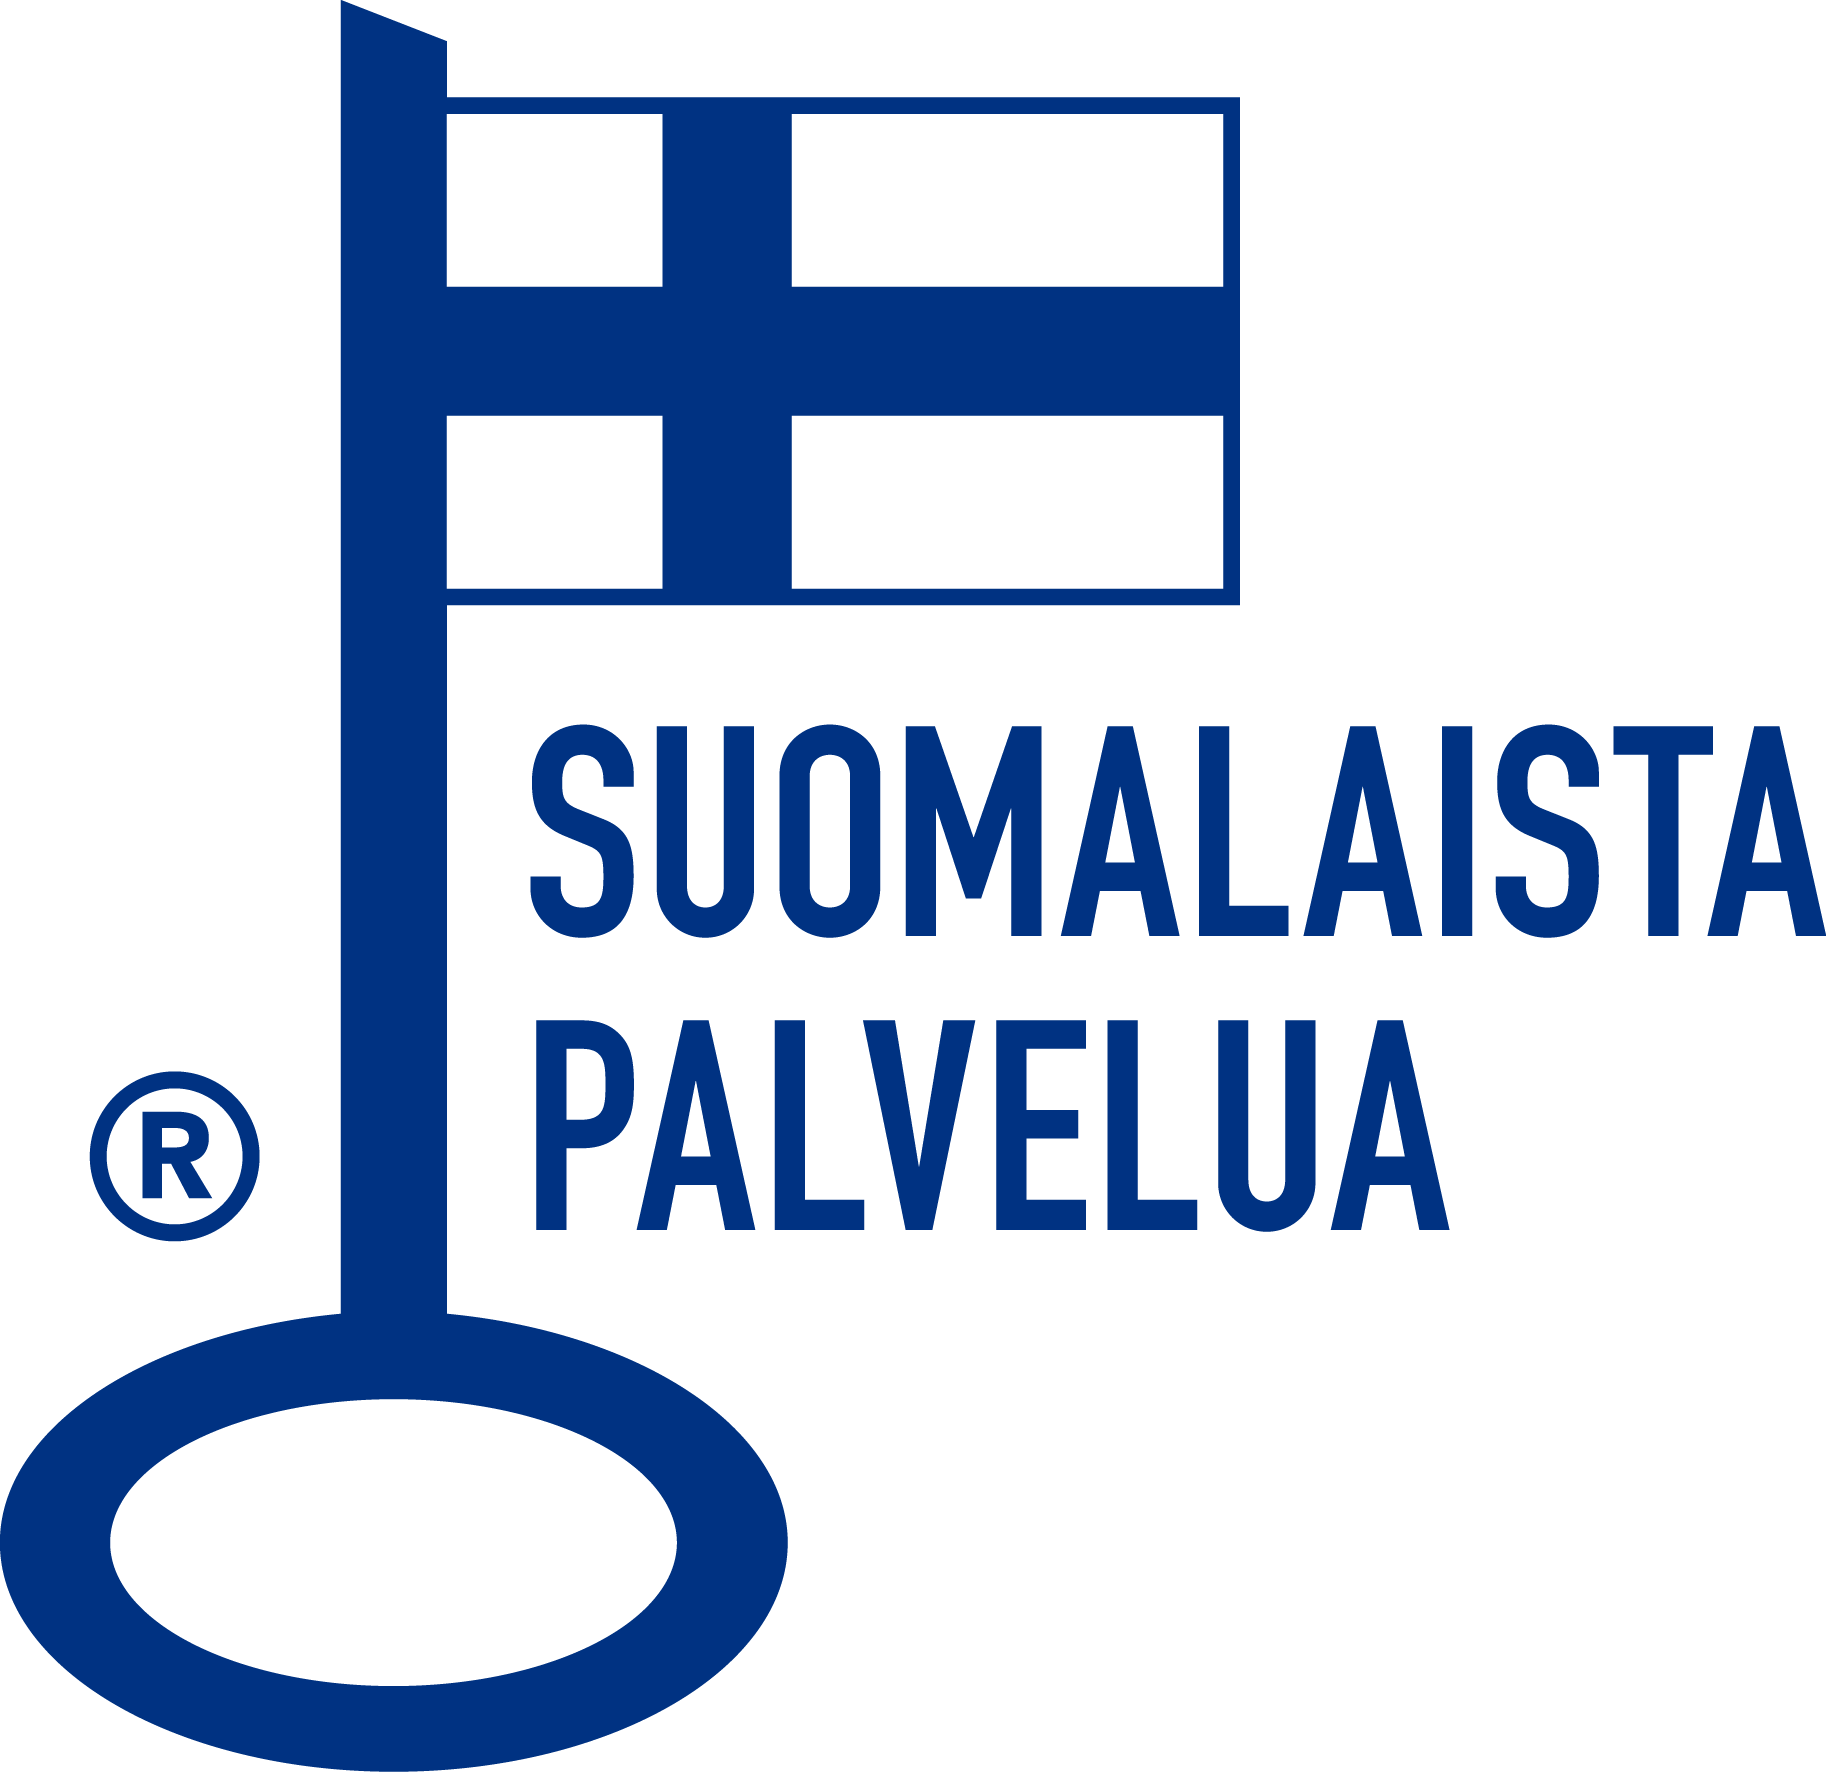 suomalaista_palvelua_1-new